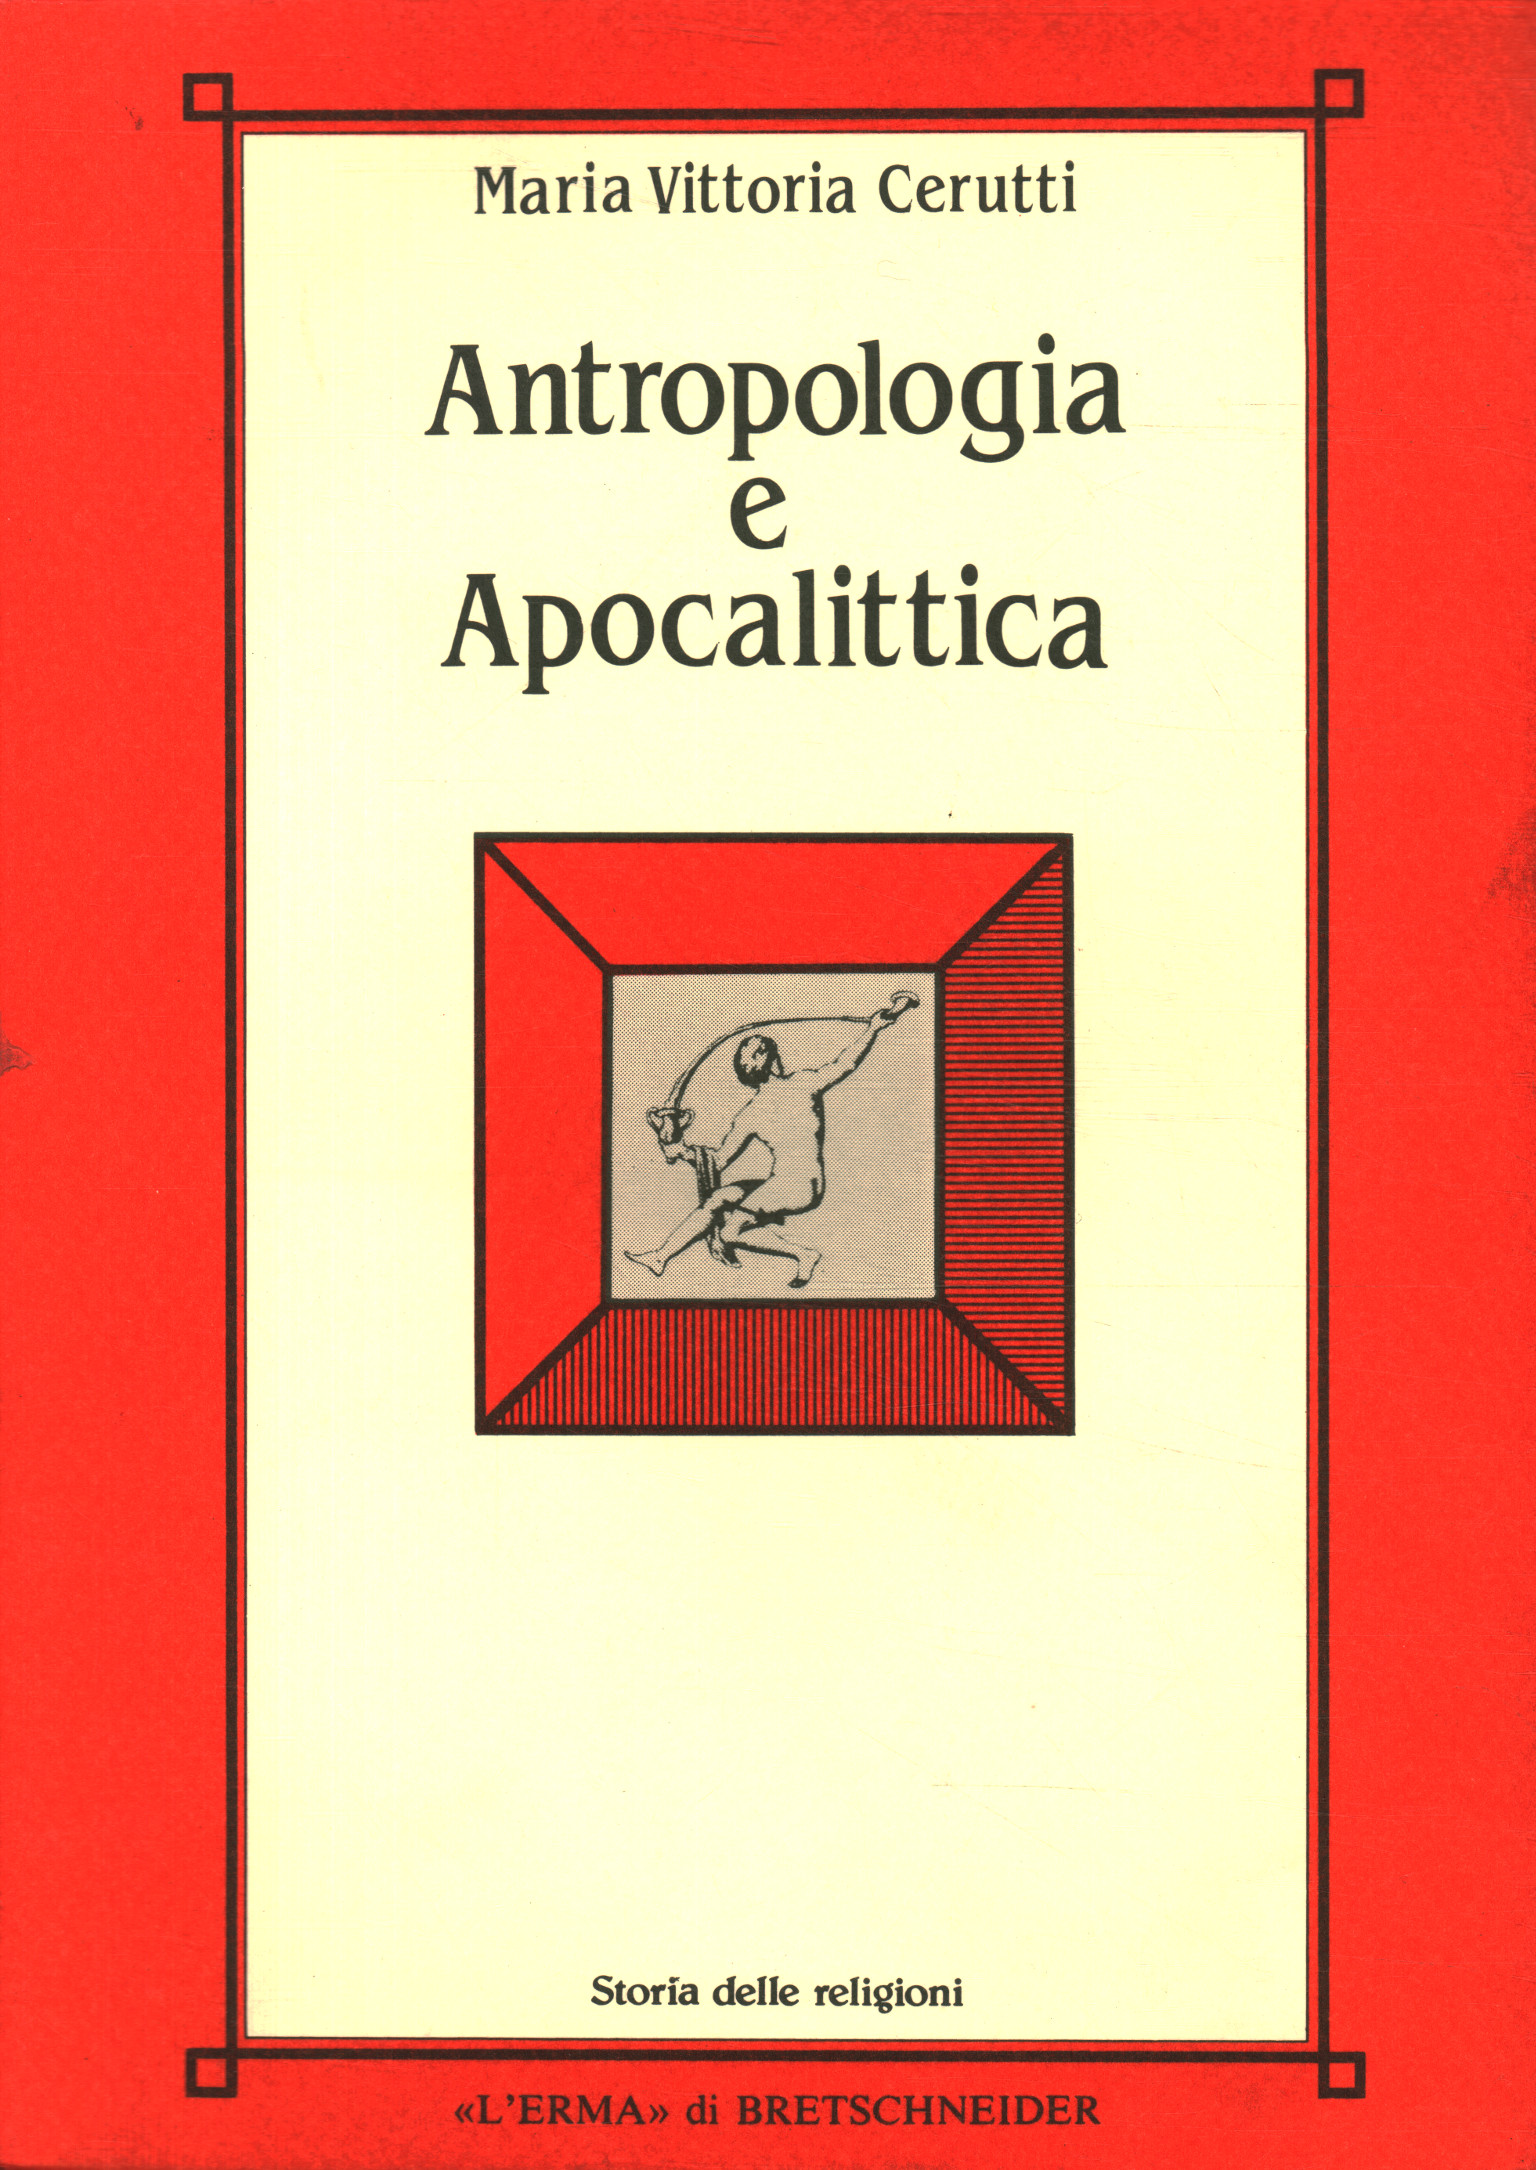 Anthropologie und Apokalyptik